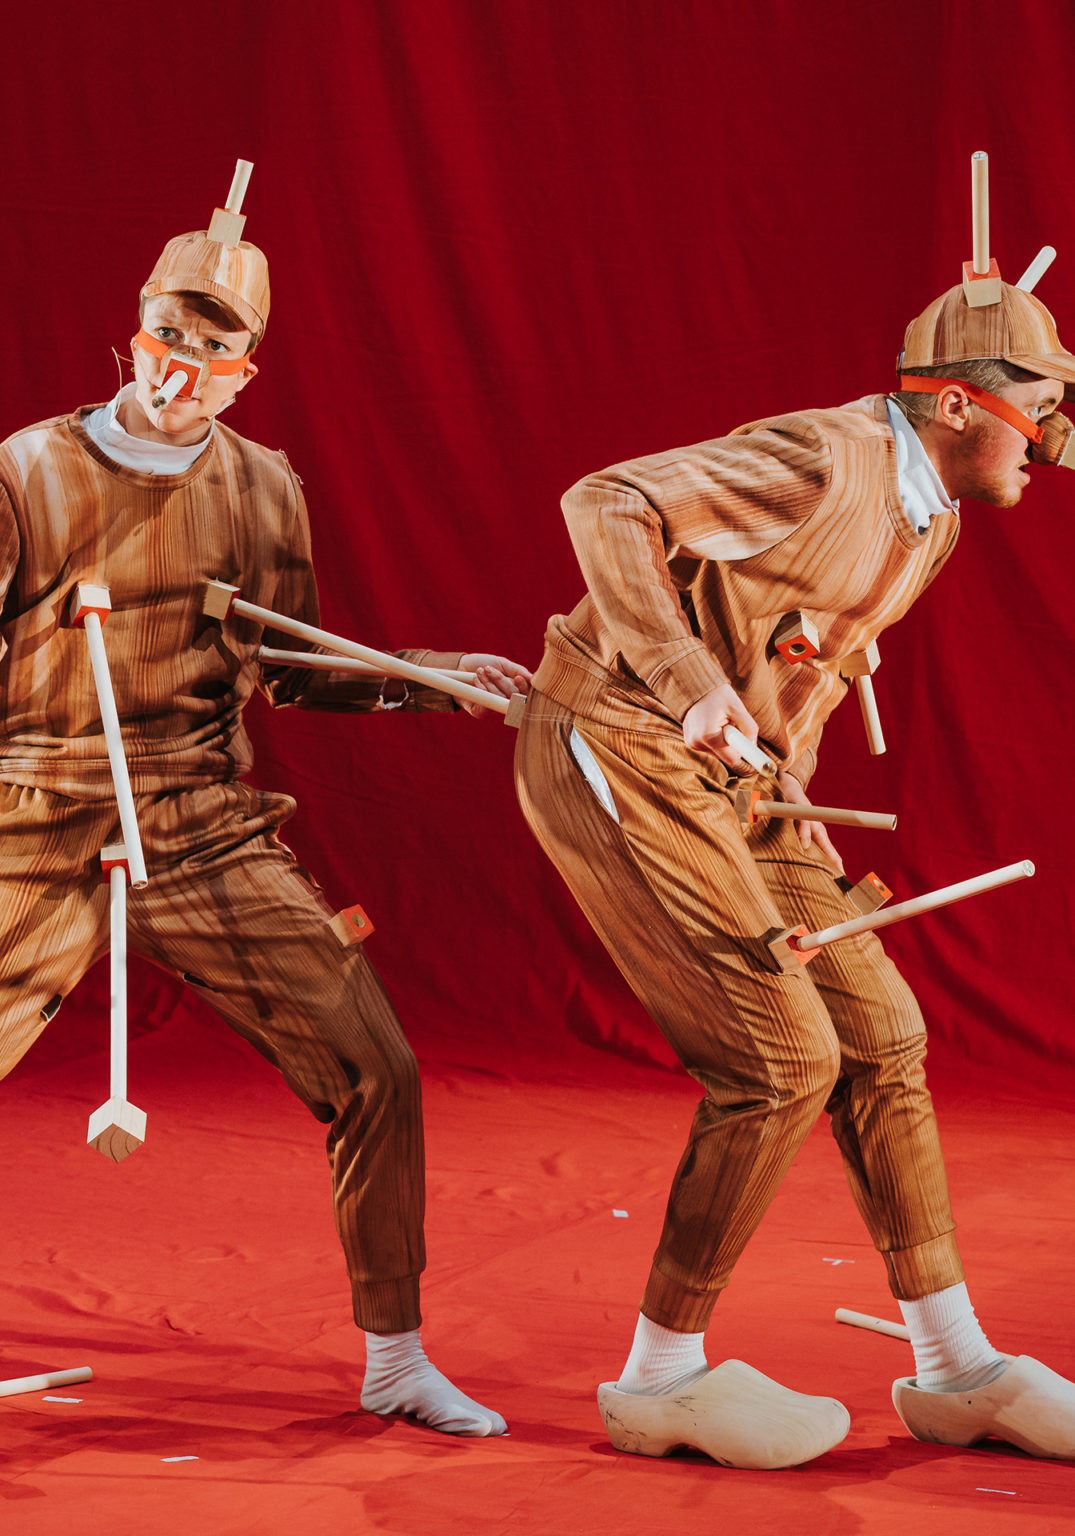 Photo de Rosana Cade et Ivor MacAskill performant sur scène dans des costumes s'apparentant au personnage de Pinocchio